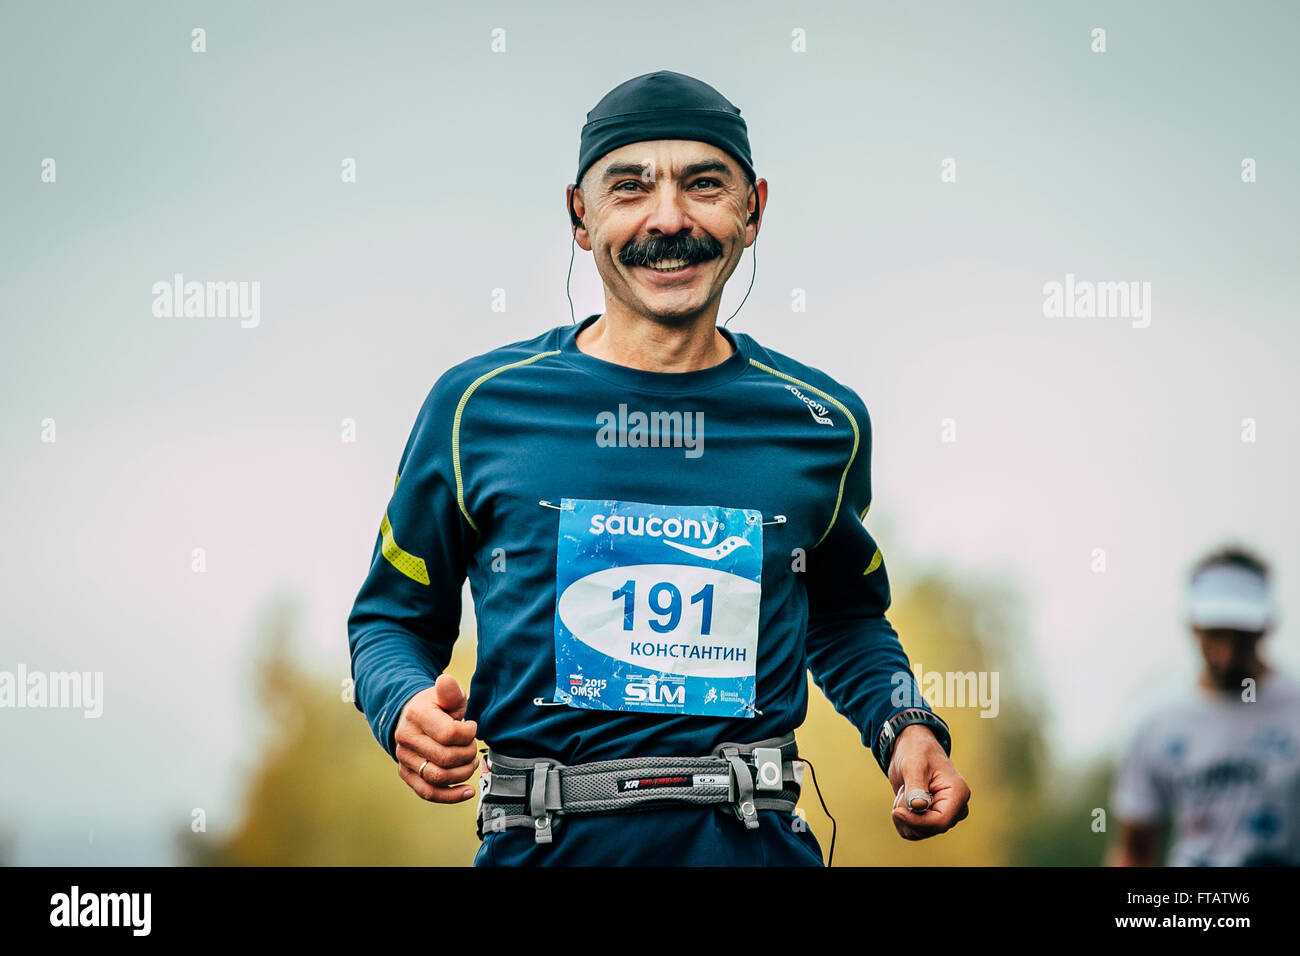 Omsk, Russland - 20. September 2015: attraktive Sportler Läufer im mittleren Alter Abstand laufen und Lächeln während der sibirischen marathon Stockfoto